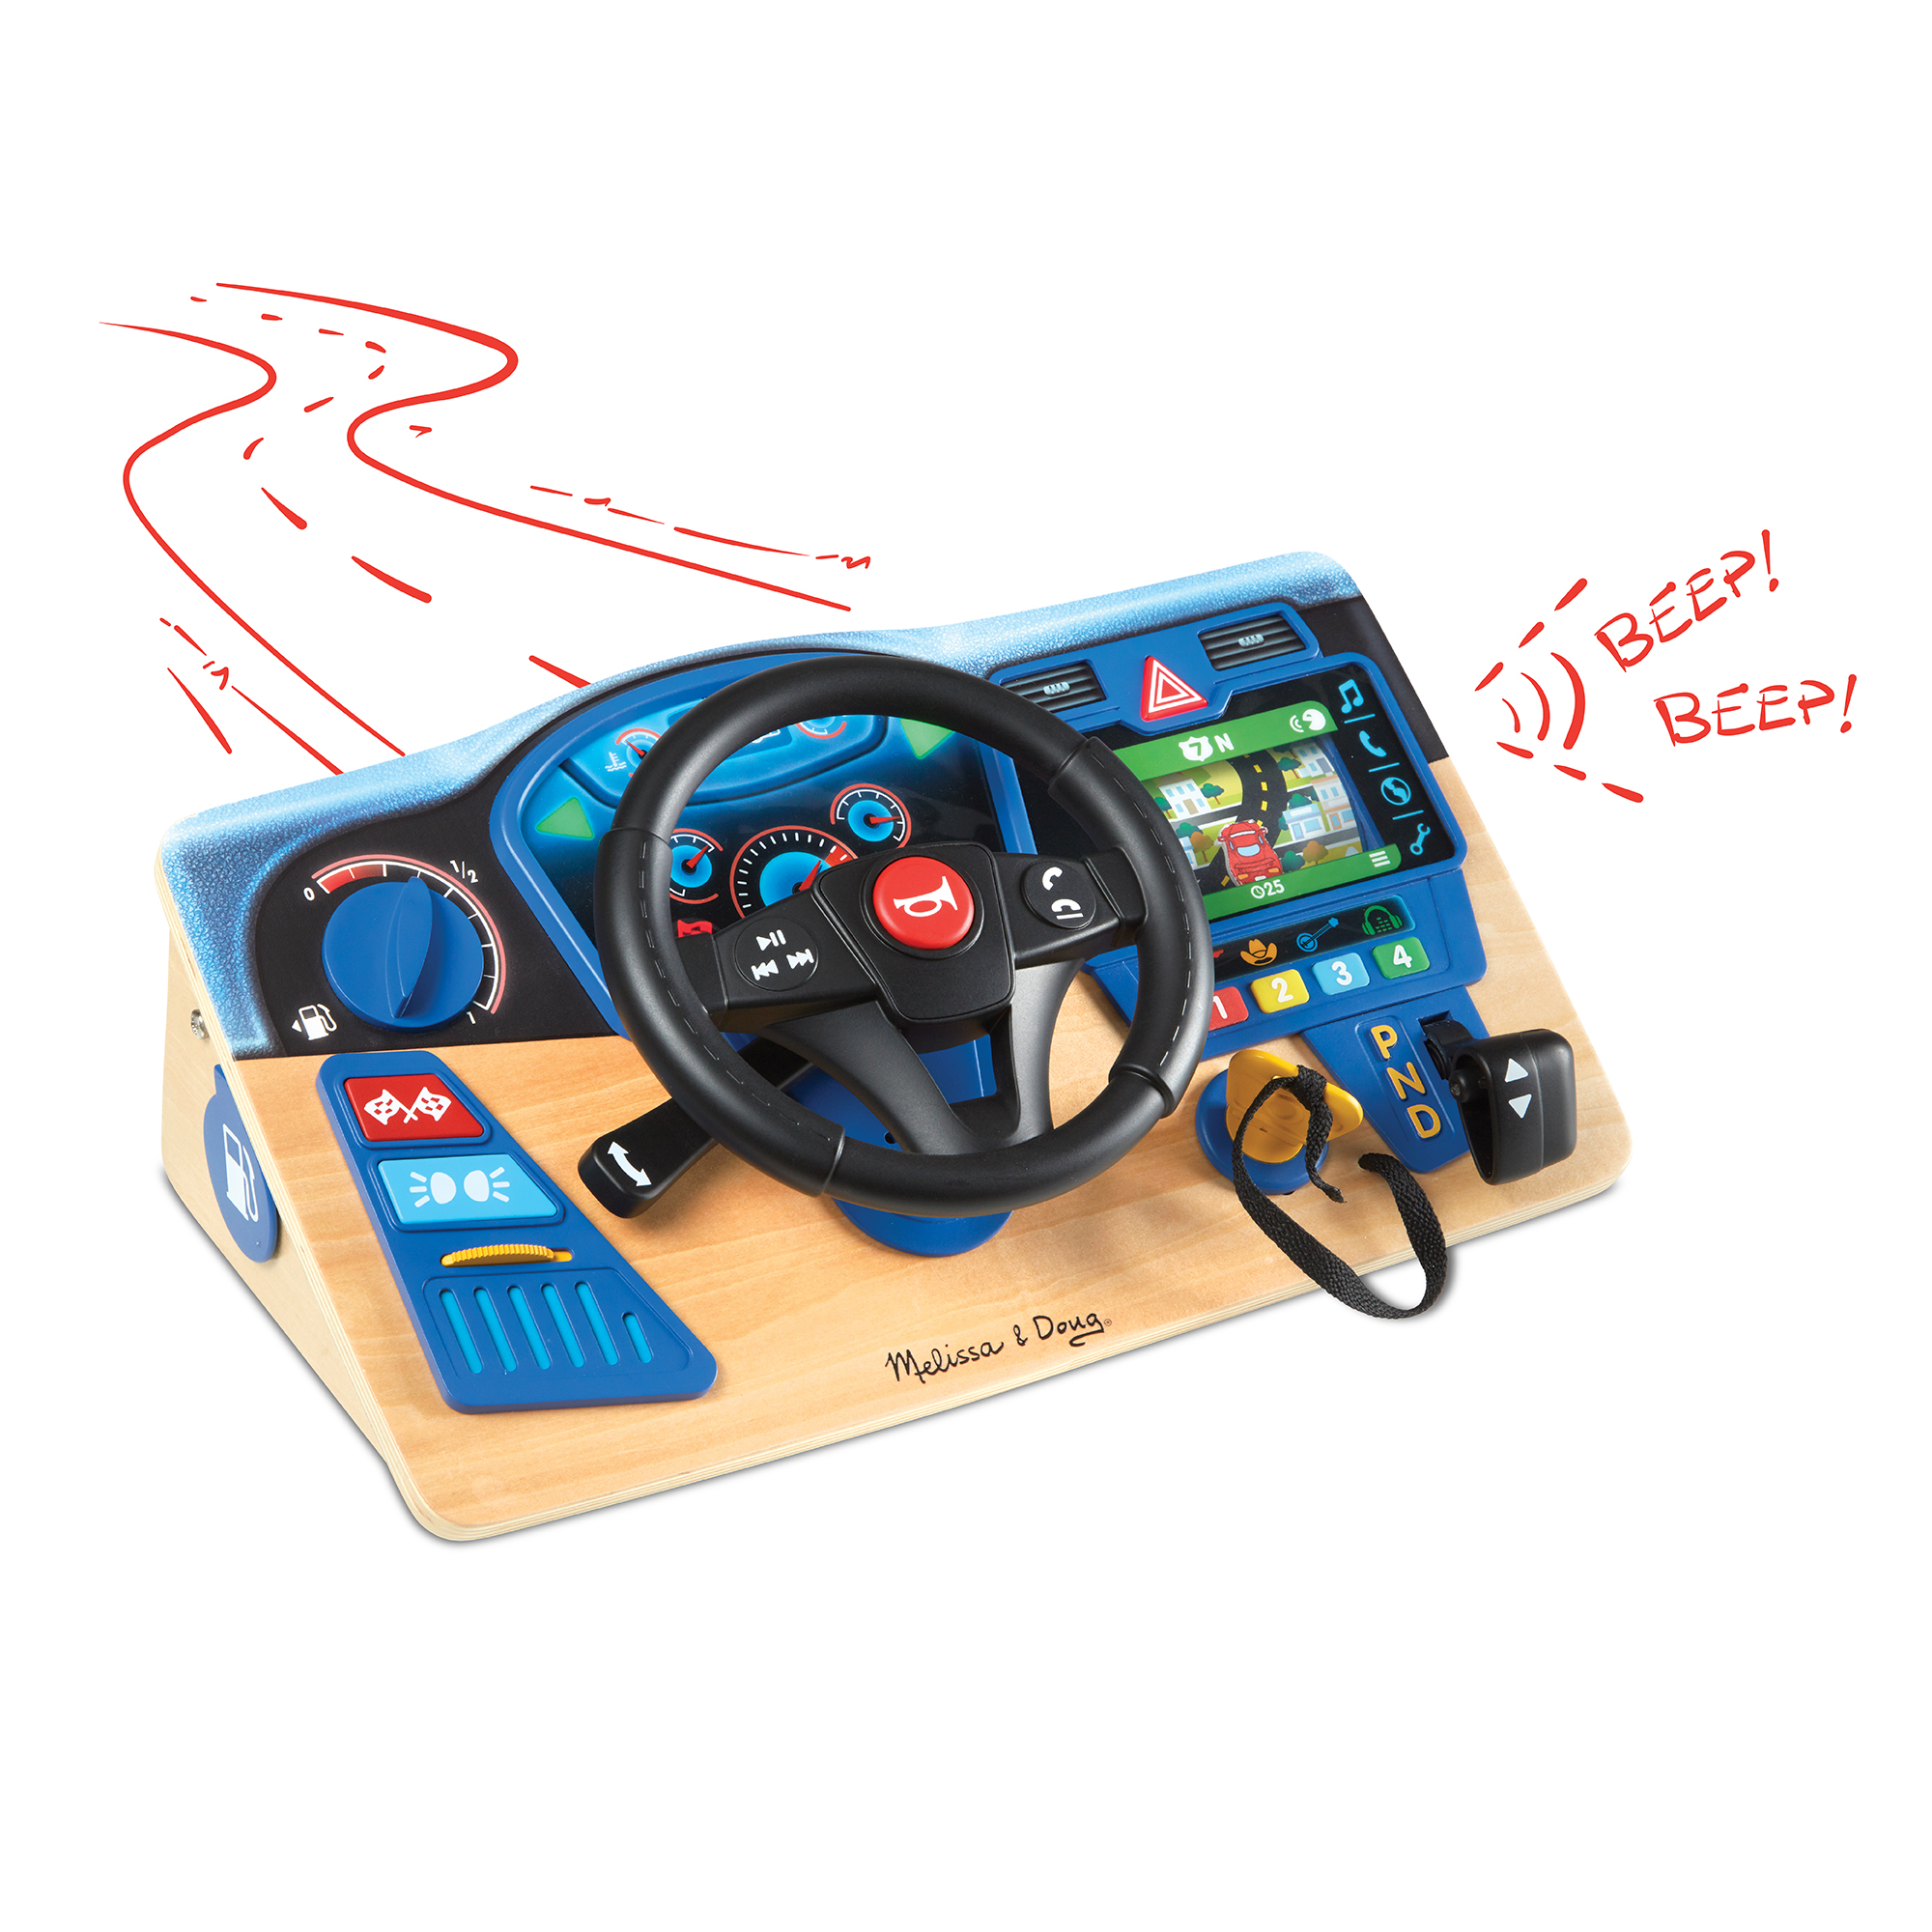 [ใหม่!! ขับเหมือนจริง!] รุ่น 31705 ชุดบังคับรถ รุ่นดีลักซ์ Melissa & Doug Vroom & Zoom Interactive Dashboard รีวิวดีใน Amazon USA  ลูกเล่นเพียบ บทบาทสมมุติเหมือนจริง ของเล่น มาลิซ่า 3-6 ขวบ